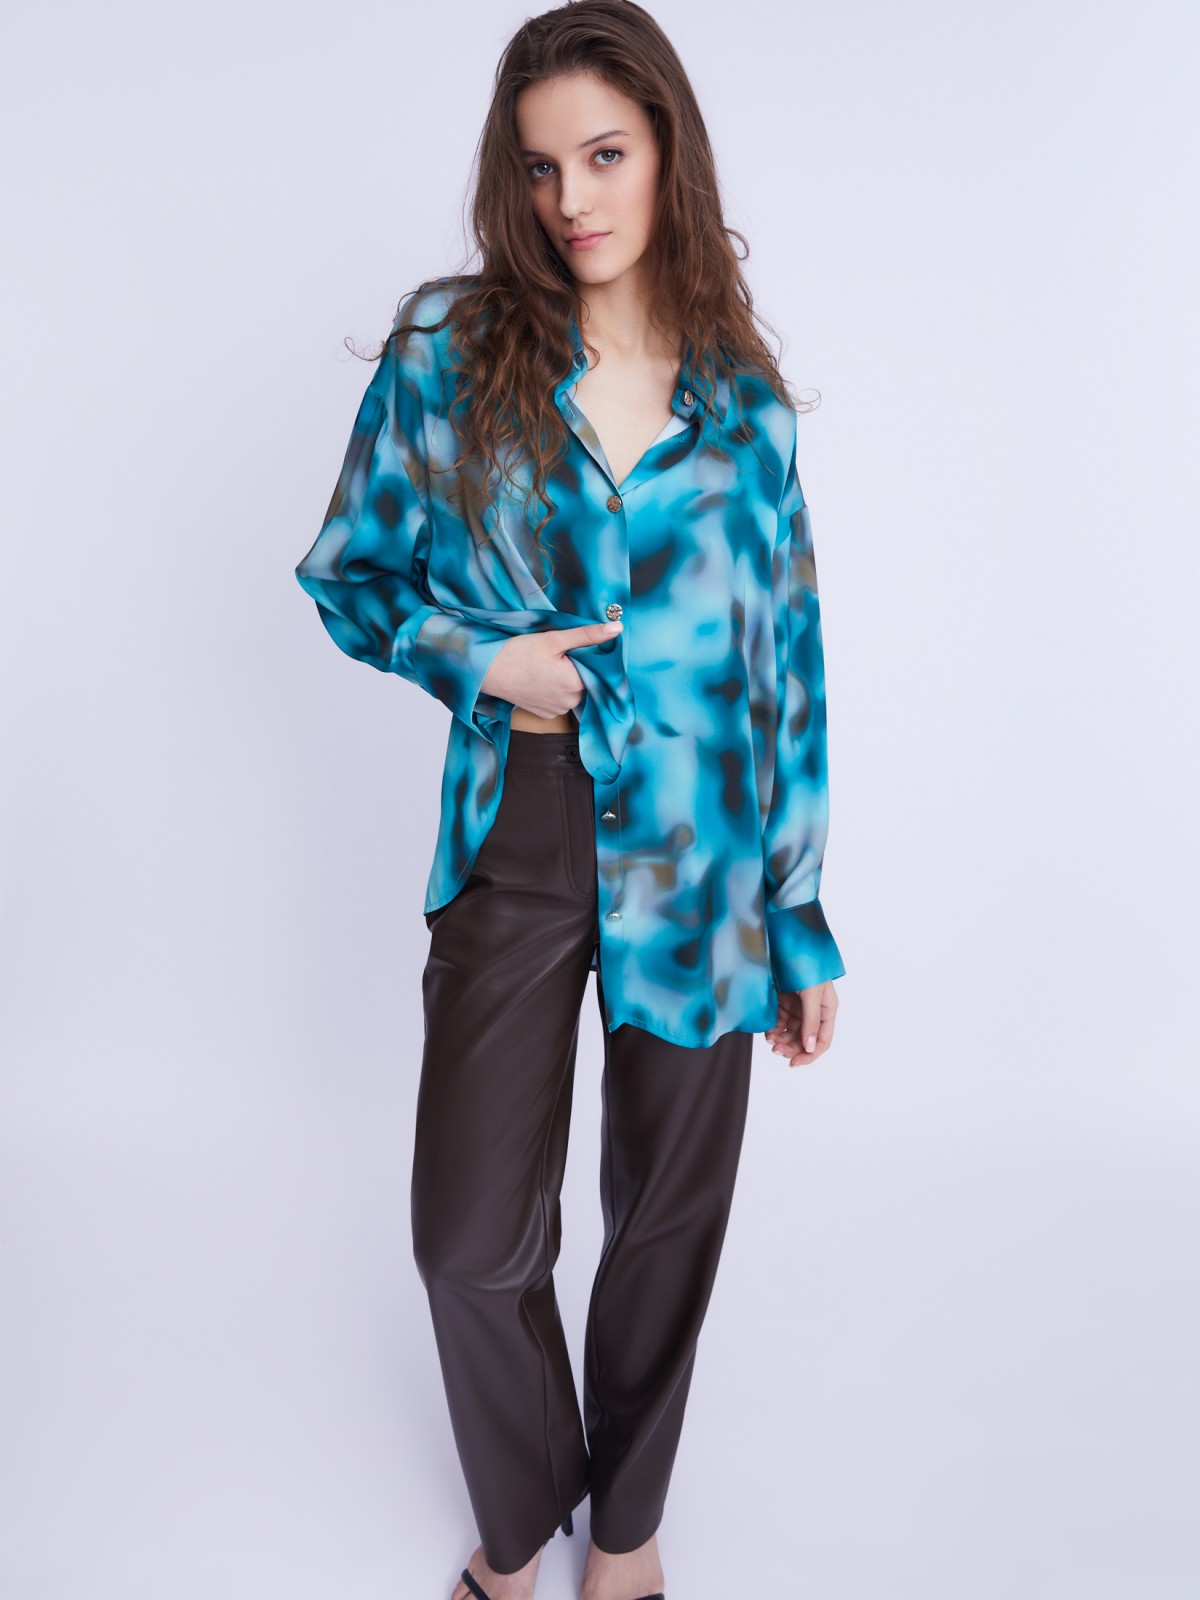 Атласная блузка-рубашка оверсайз силуэта с акцентным принтом zolla 22333117Y041, цвет бирюзовый, размер L - фото 2